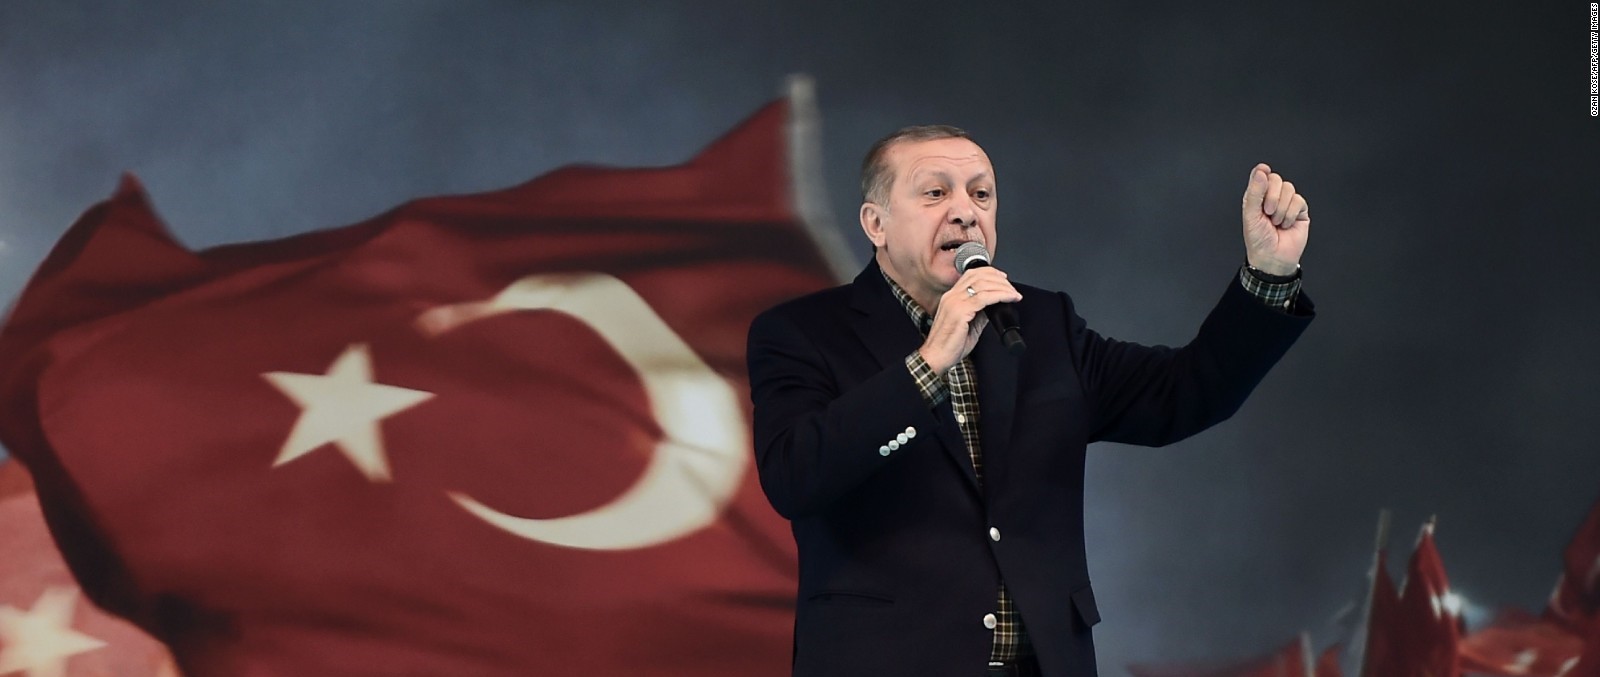 Γεωτρήσεις εντός ελληνικής υφαλοκρηπίδας και κυπριακής ΑΟΖ εξήγγειλε ο Τούρκος πρόεδρος Ρ.Τ.Ερντογάν